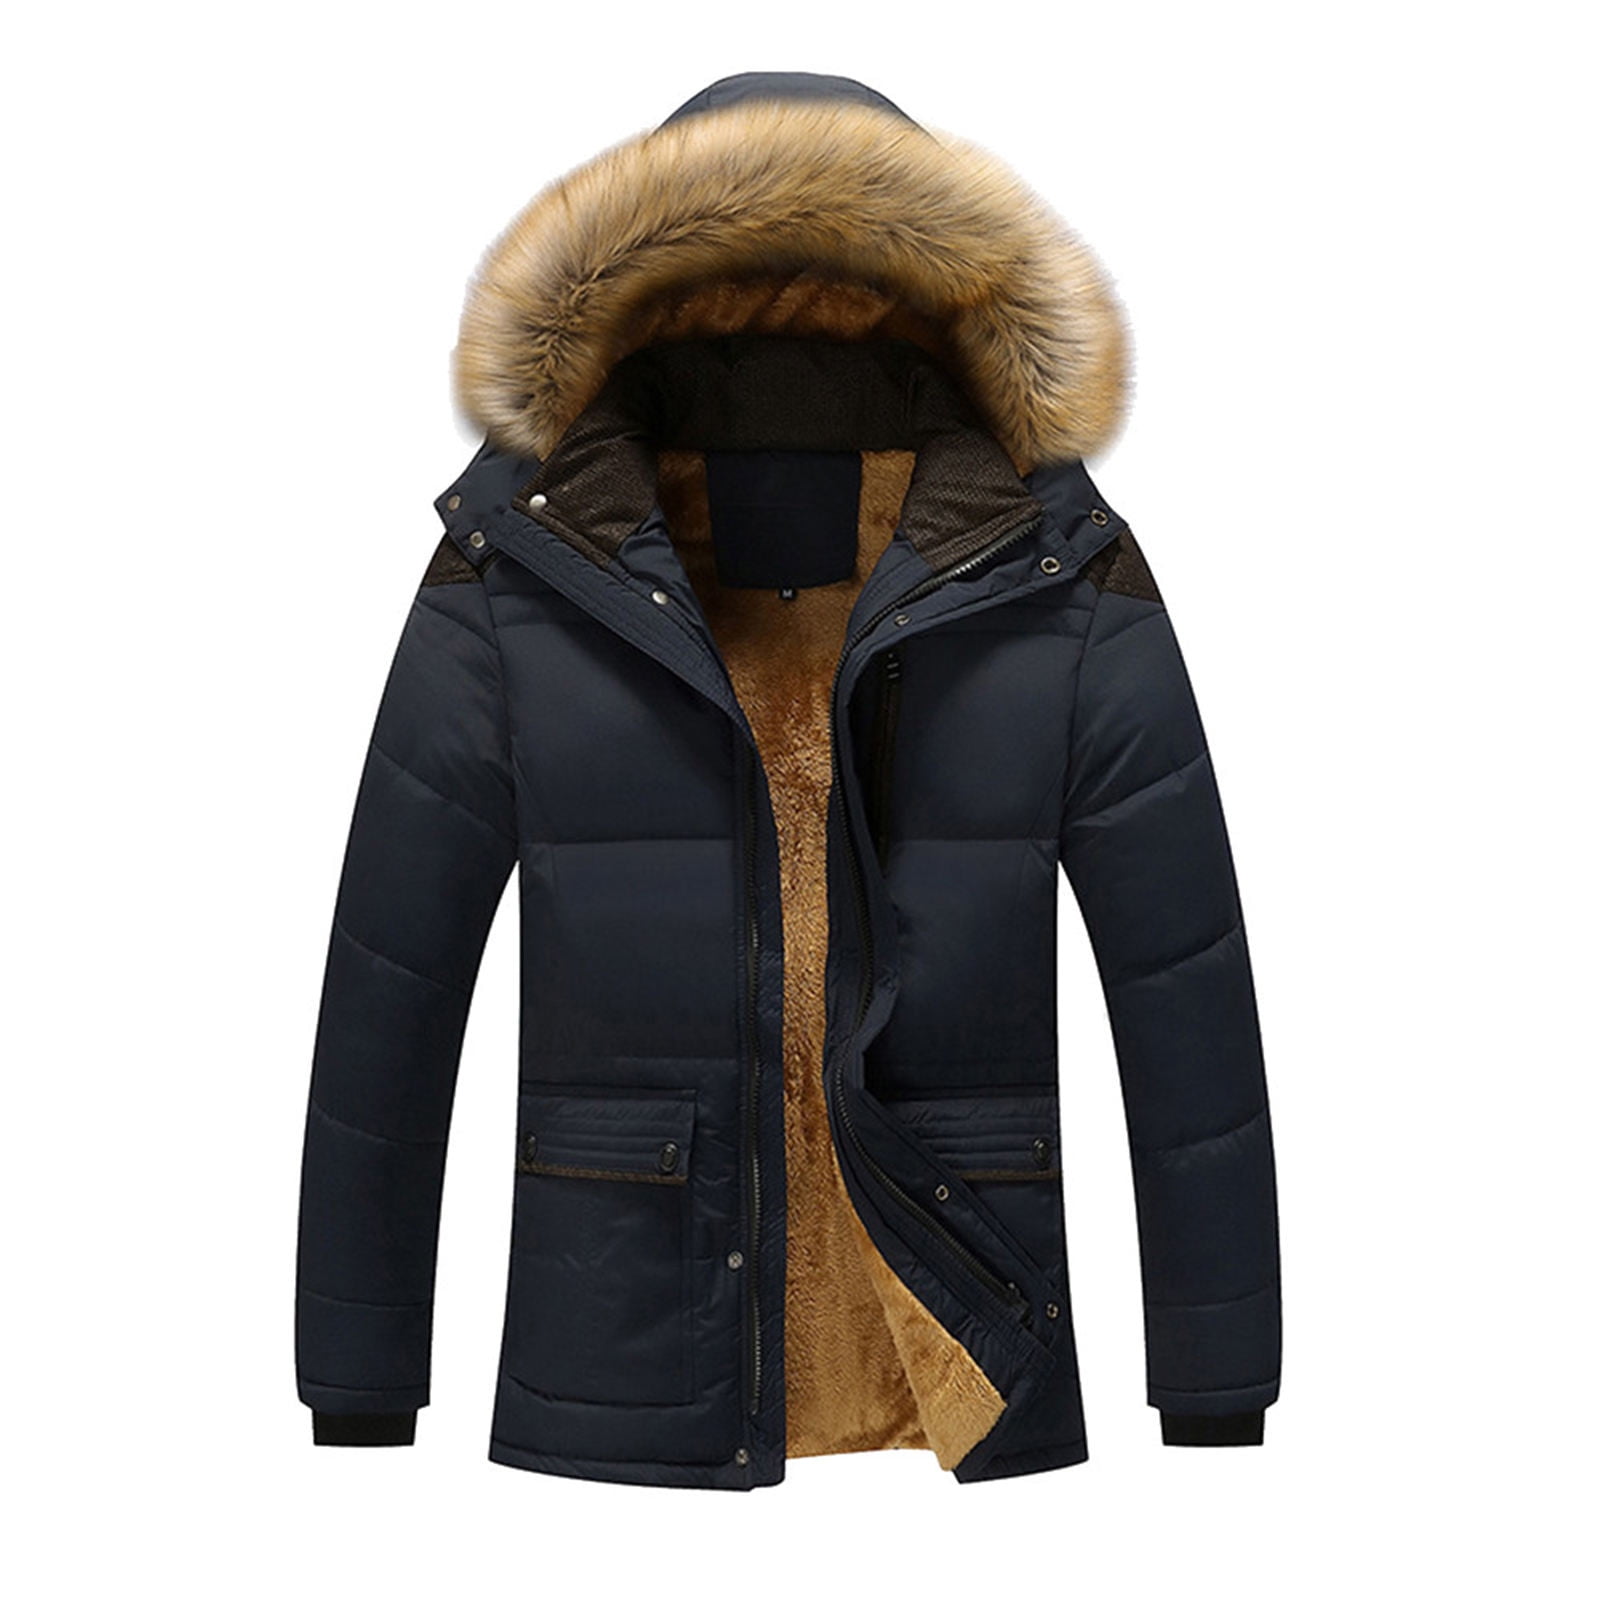 KaLI_store Mens Winter Parkas Men Winter Warm Coat Jacket Outwear Men's ...